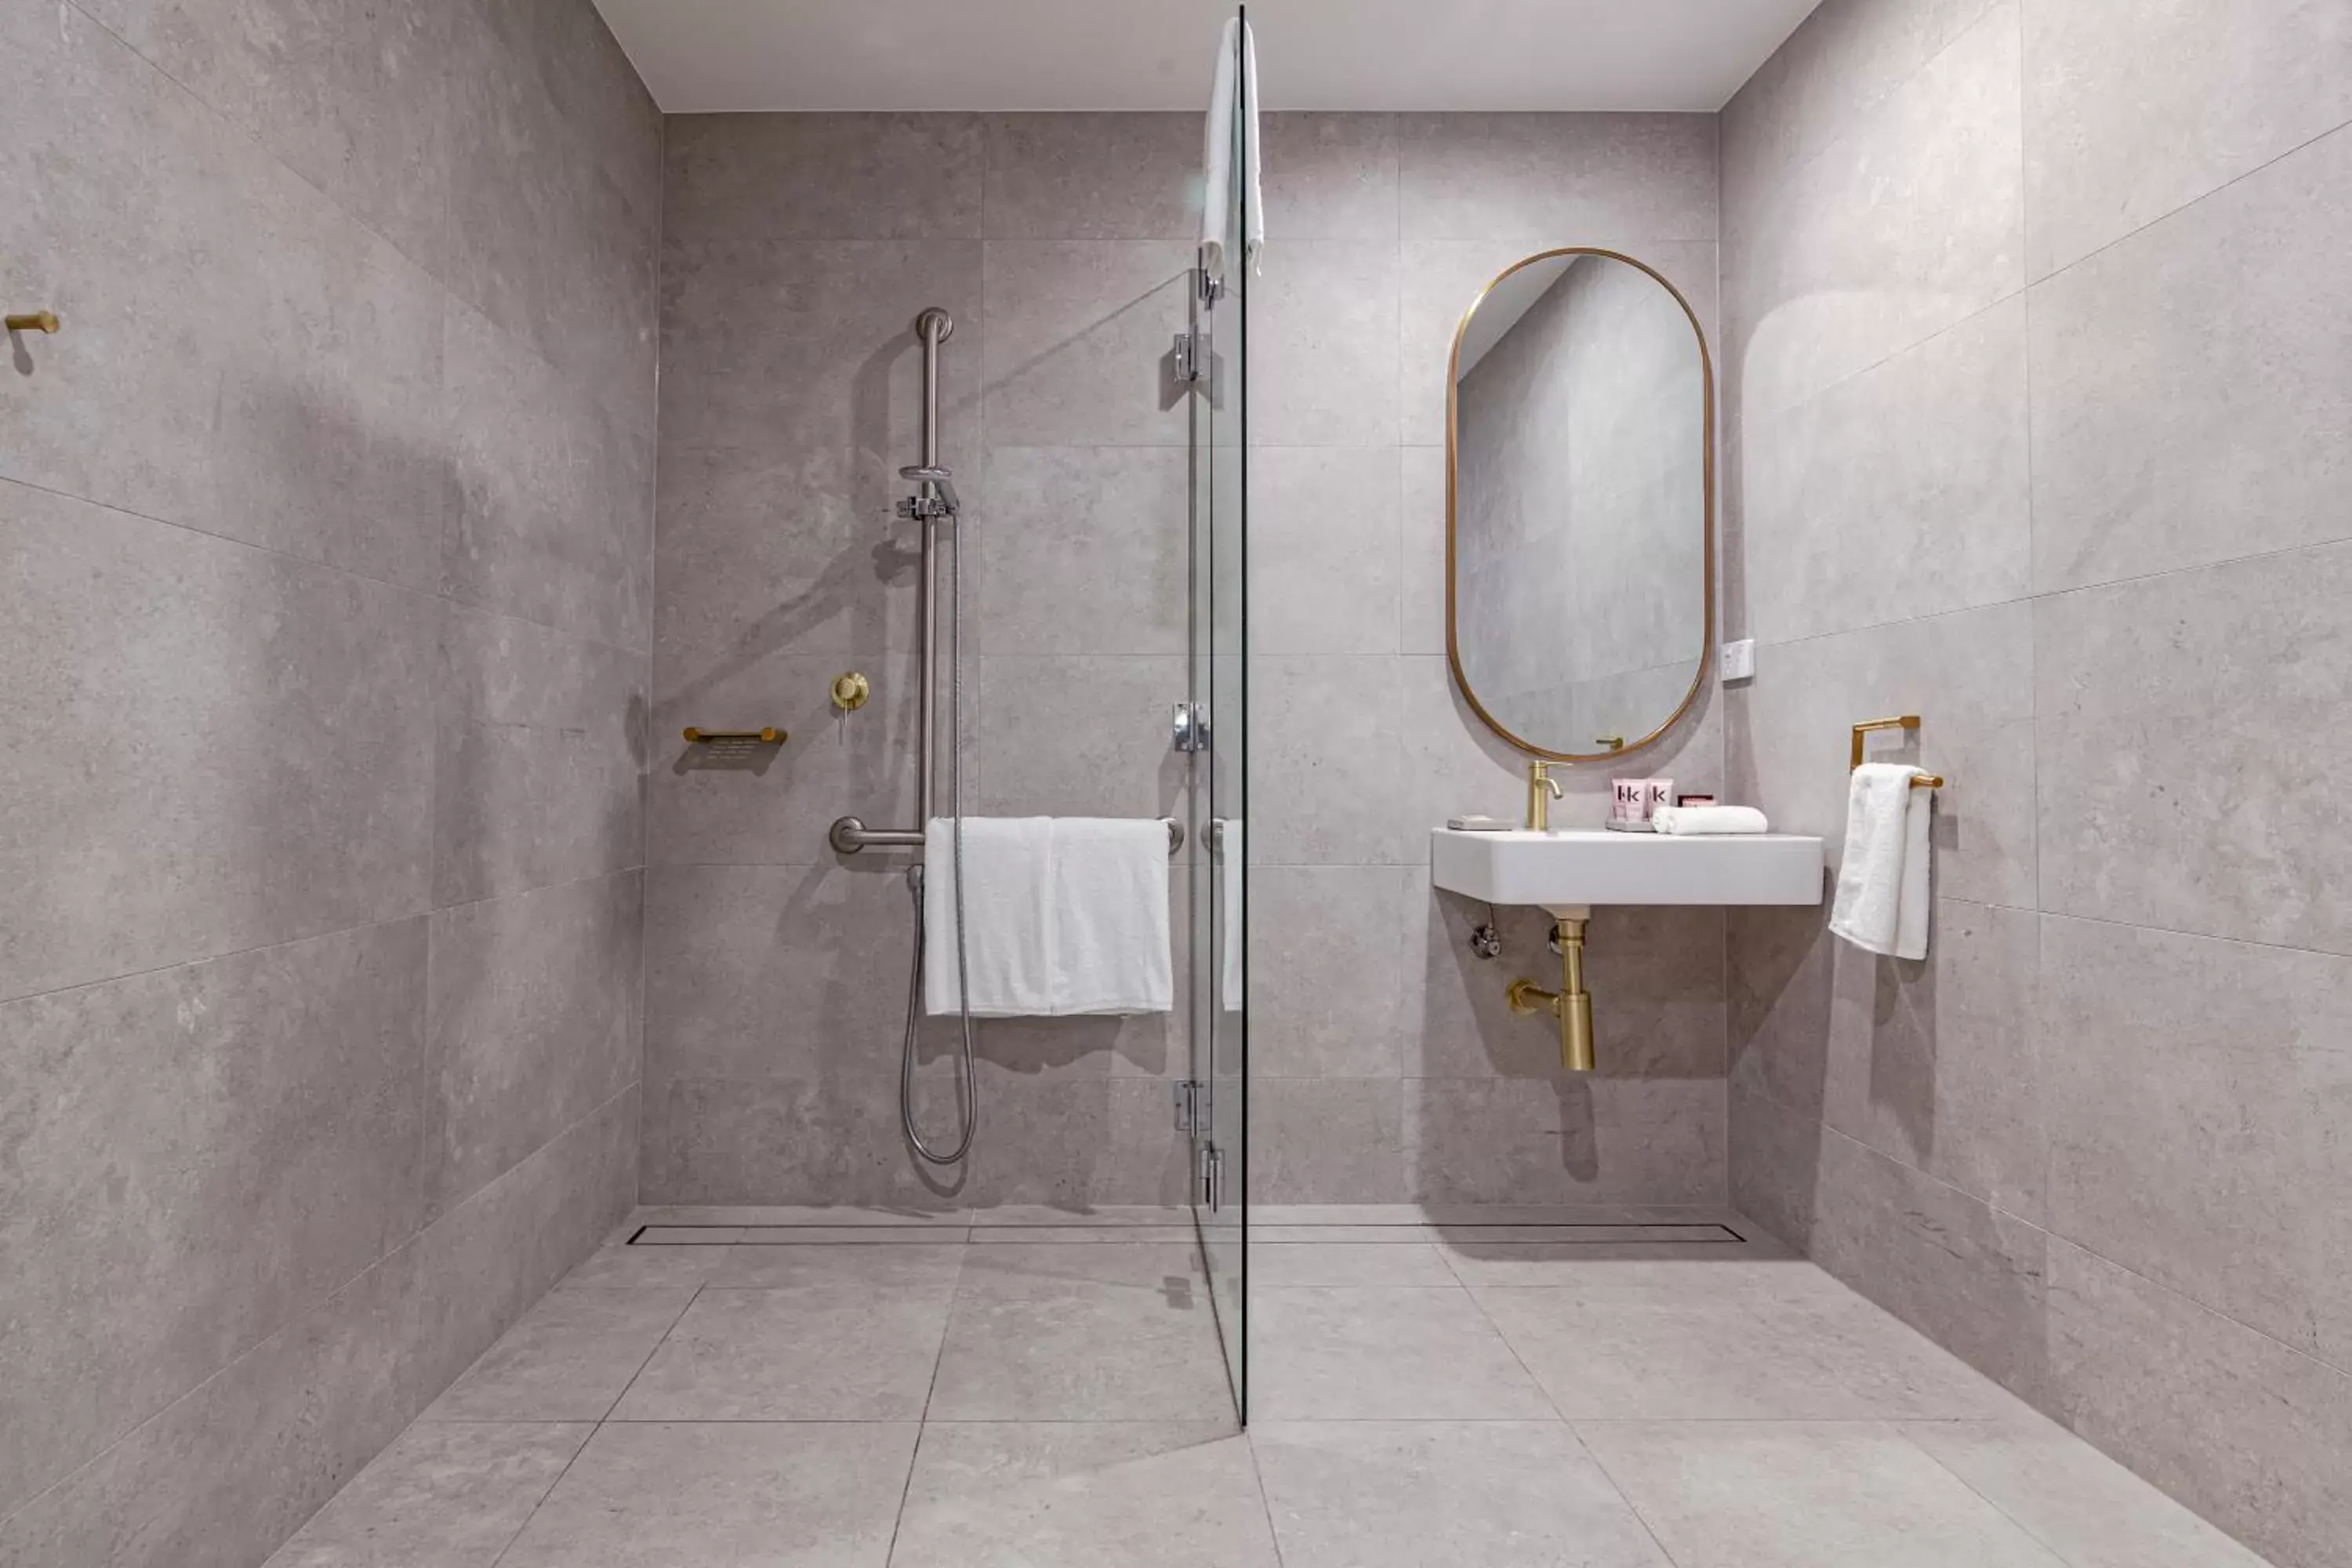 Shower, Bathroom in Astina Suites, Penrith